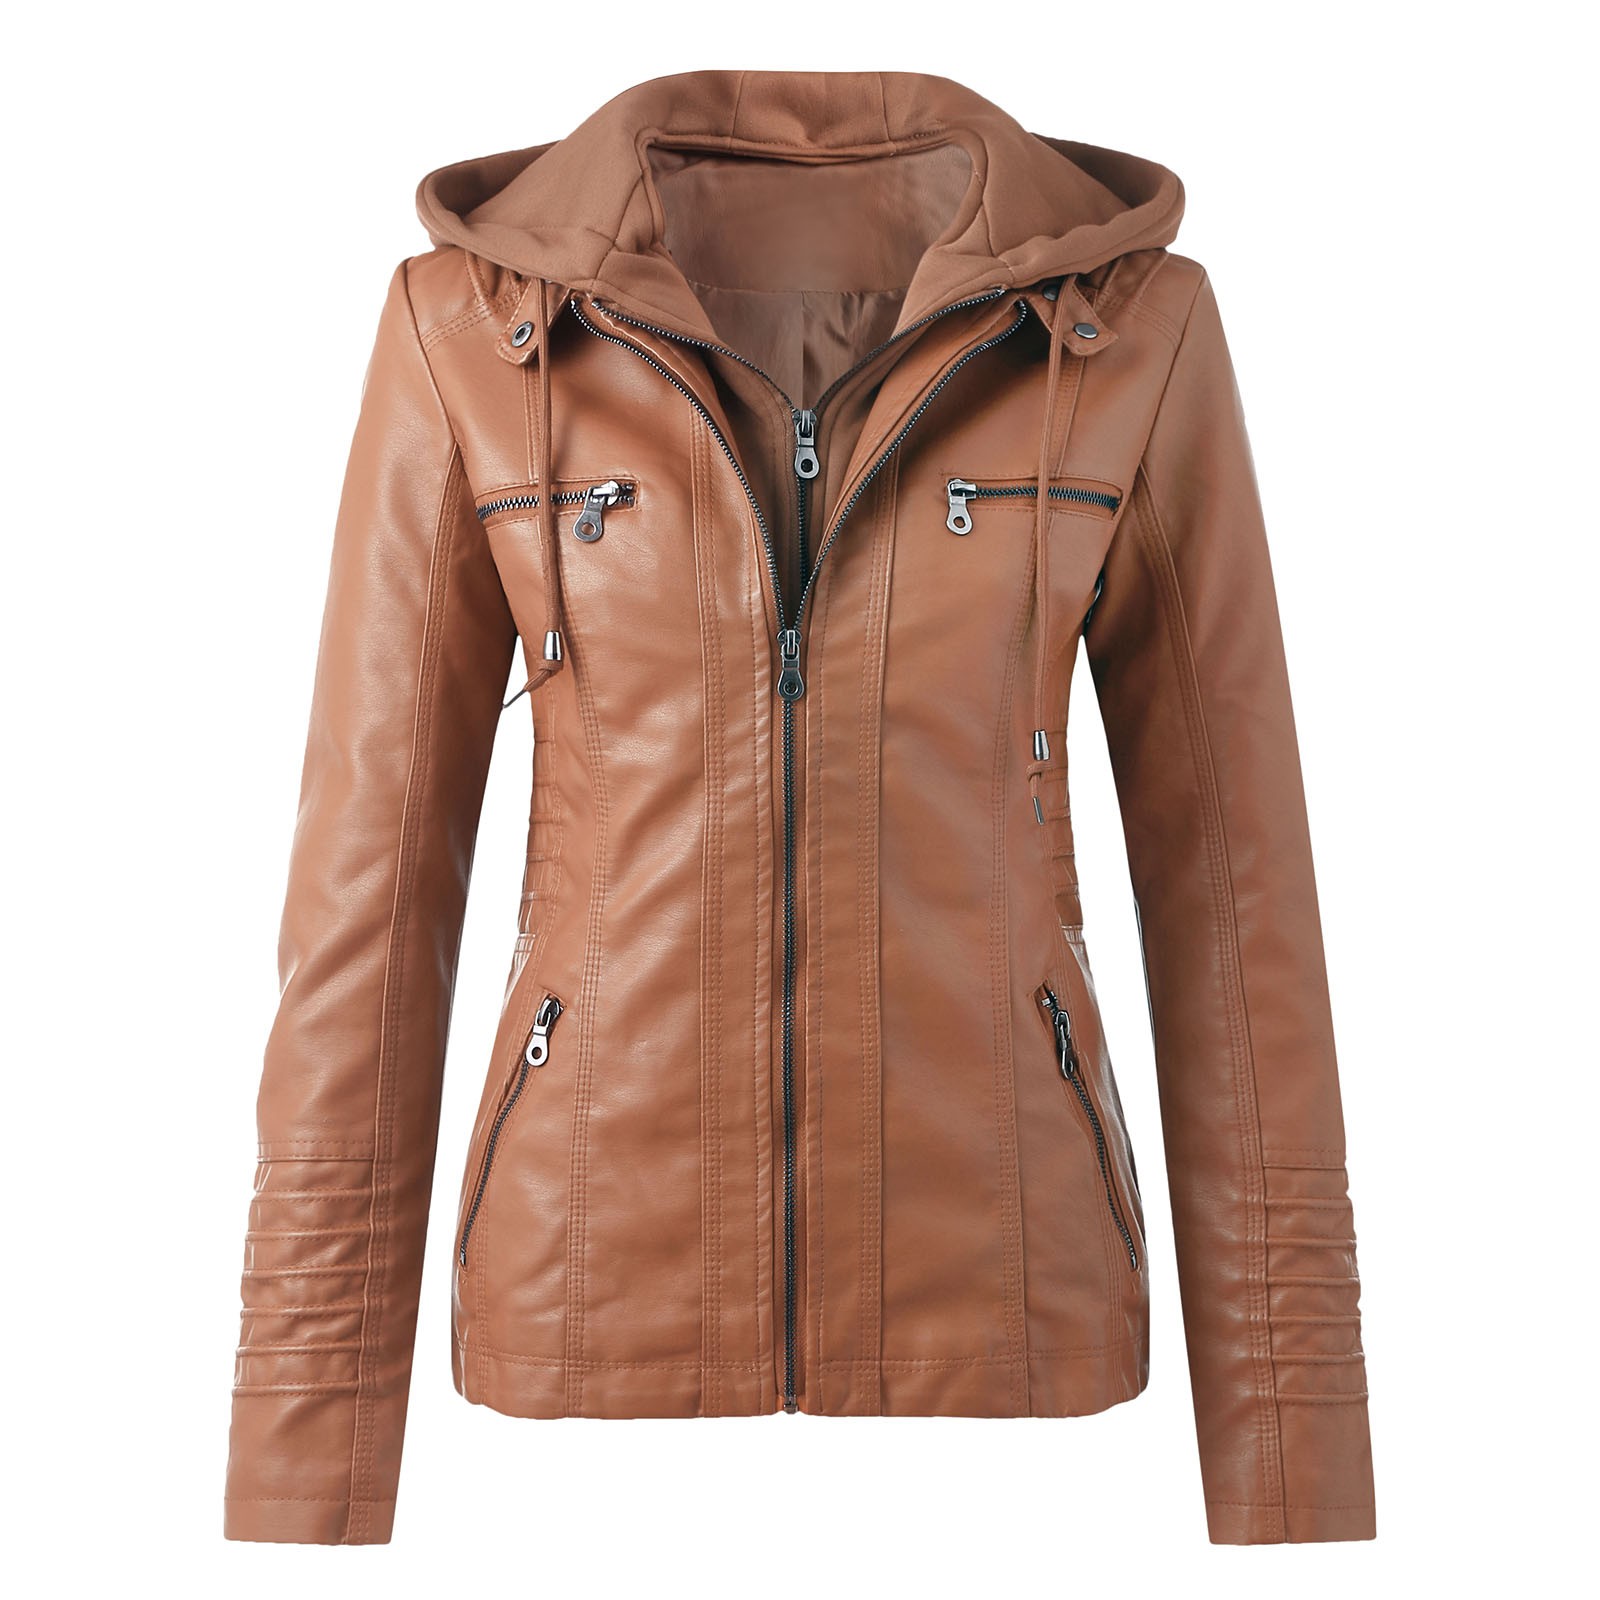 Bescita Women's Slim Leather Stand Collar Zip Motorcycle Suit Belt Coat Jacket Tops - image 1 of 5